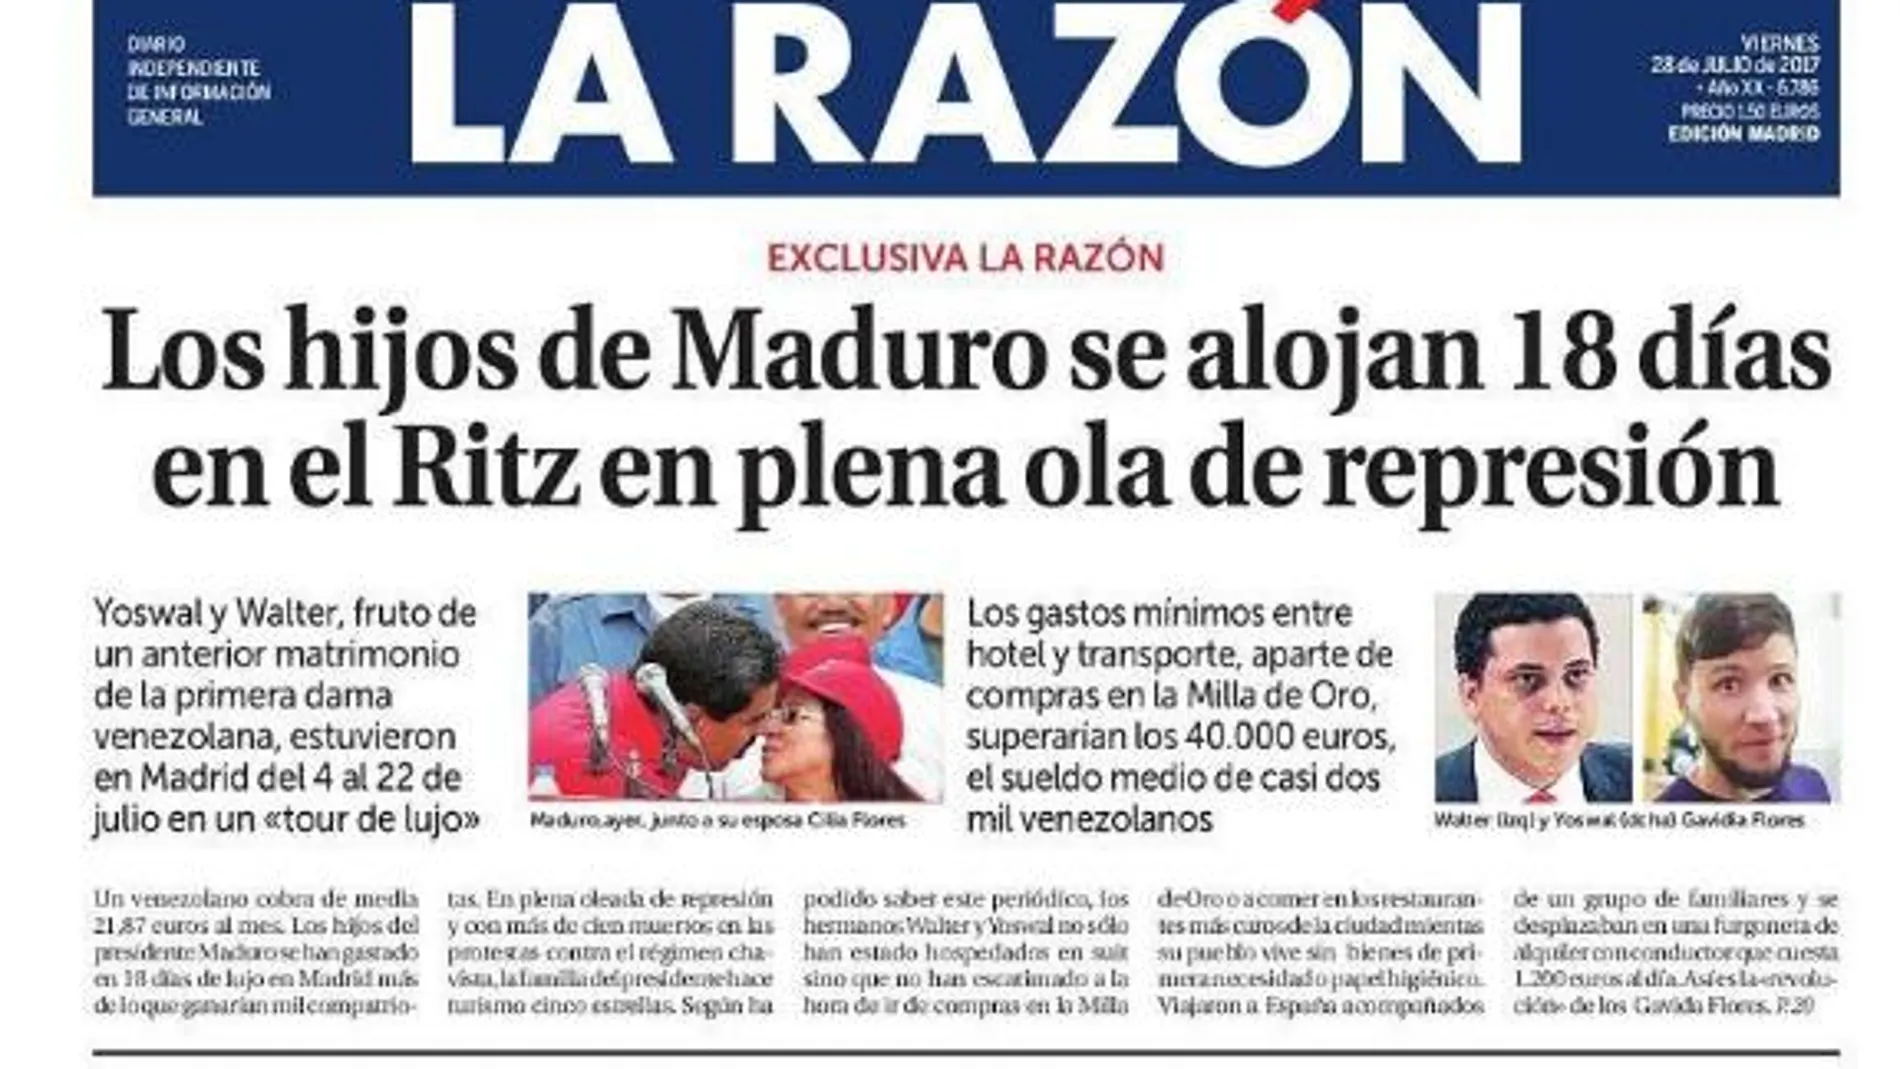 Portada de LA RAZÓN con la exclusiva del viaje a Madrid de los hijastros de Maduro